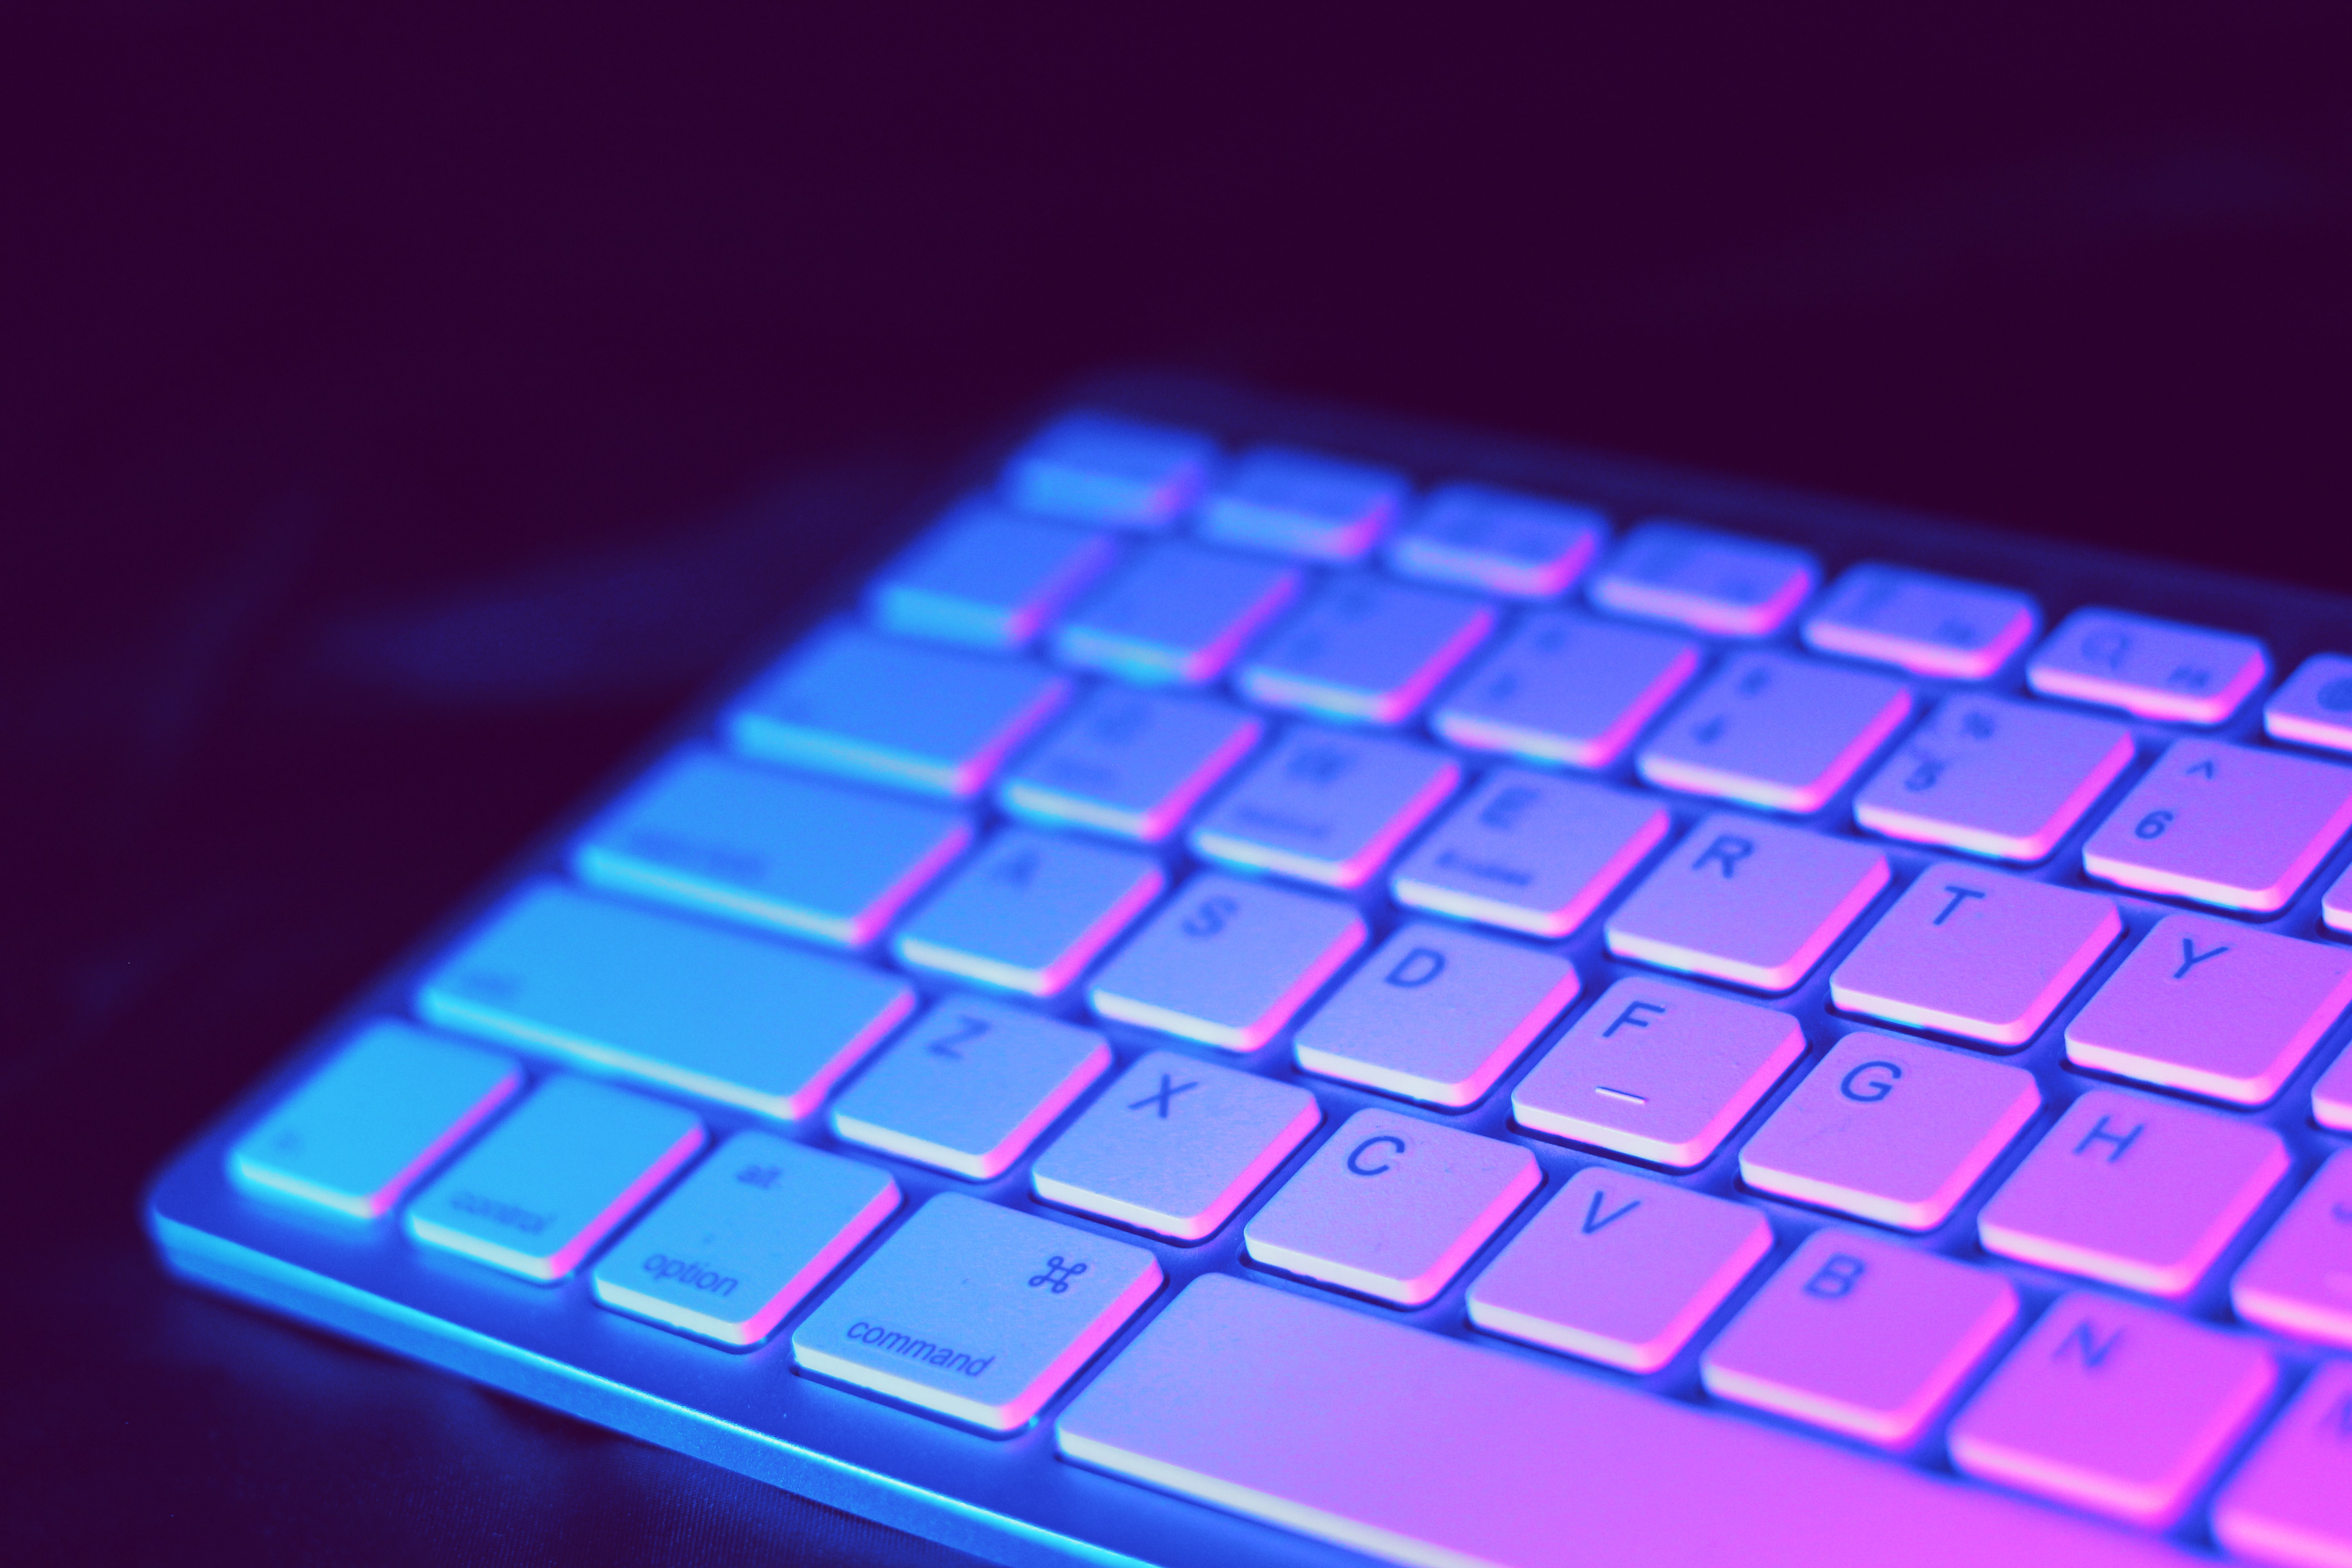 El slime puede ayudar a limpiar, pero no debe ser cualquier tipo de esta sustancia, pues el teclado podría estropearse (Crédito: pixbay)